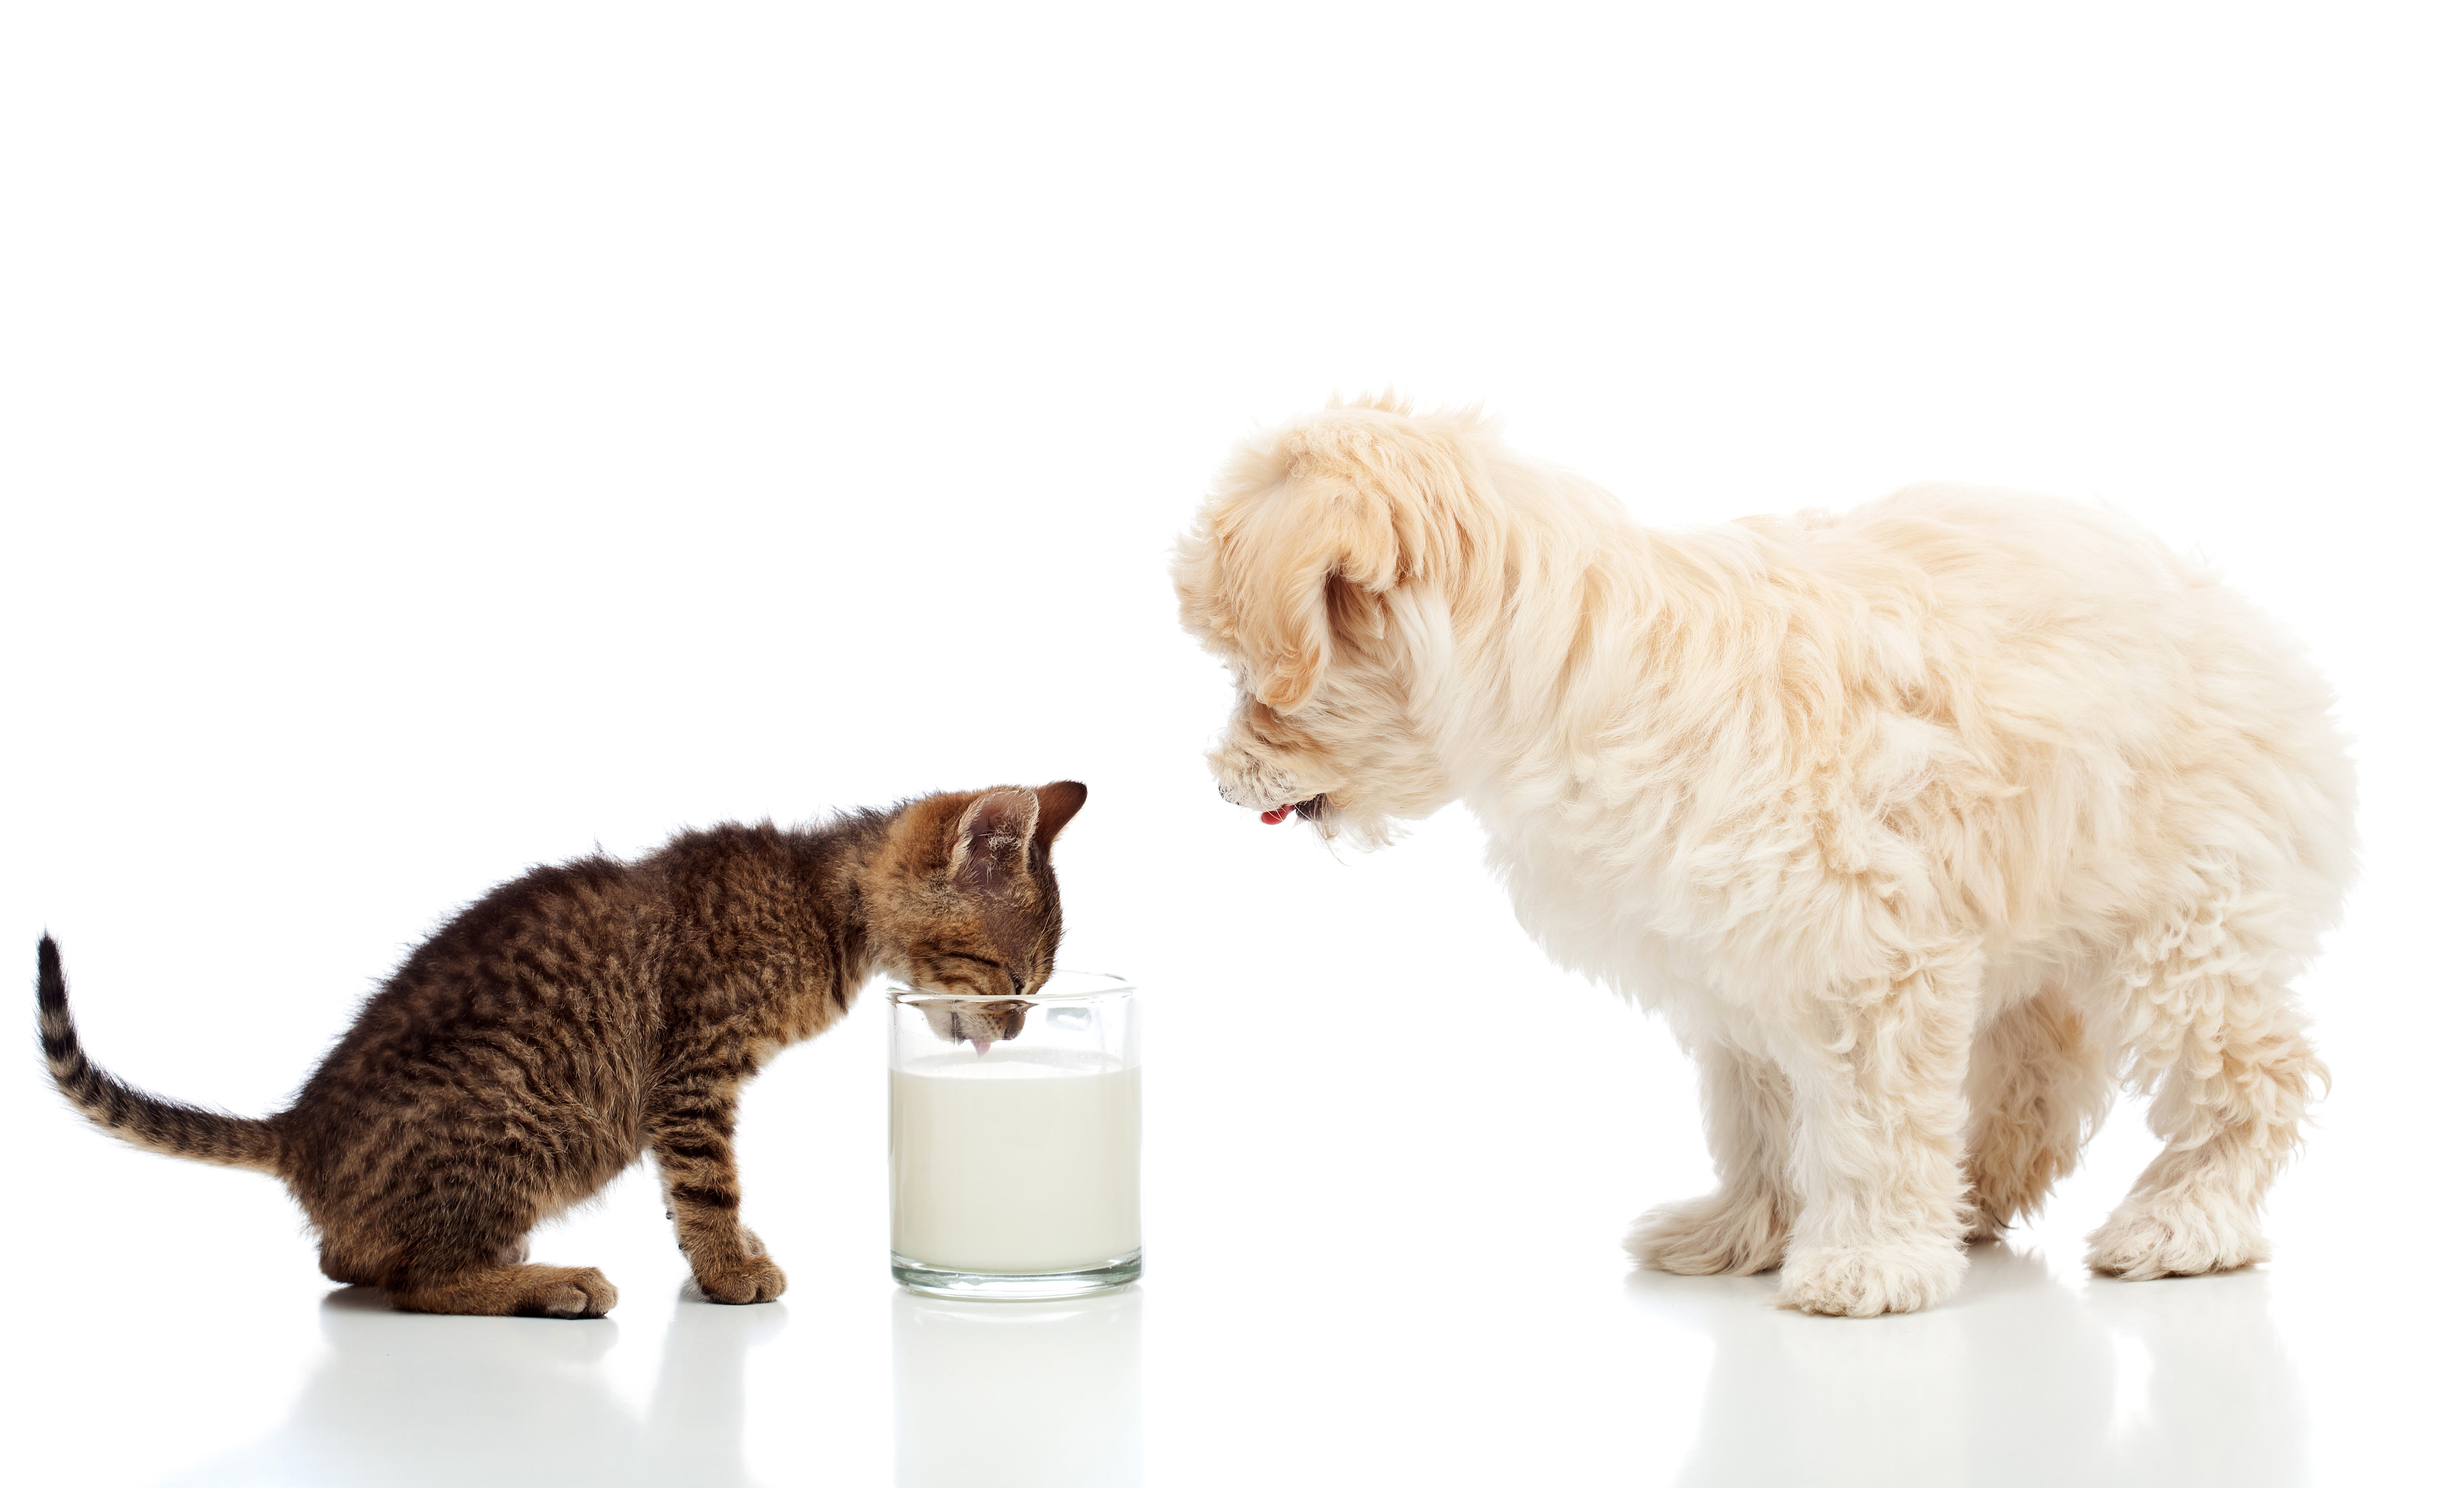 Baby Animal Cat Dog Kitten Milk Puppy 5616x3392